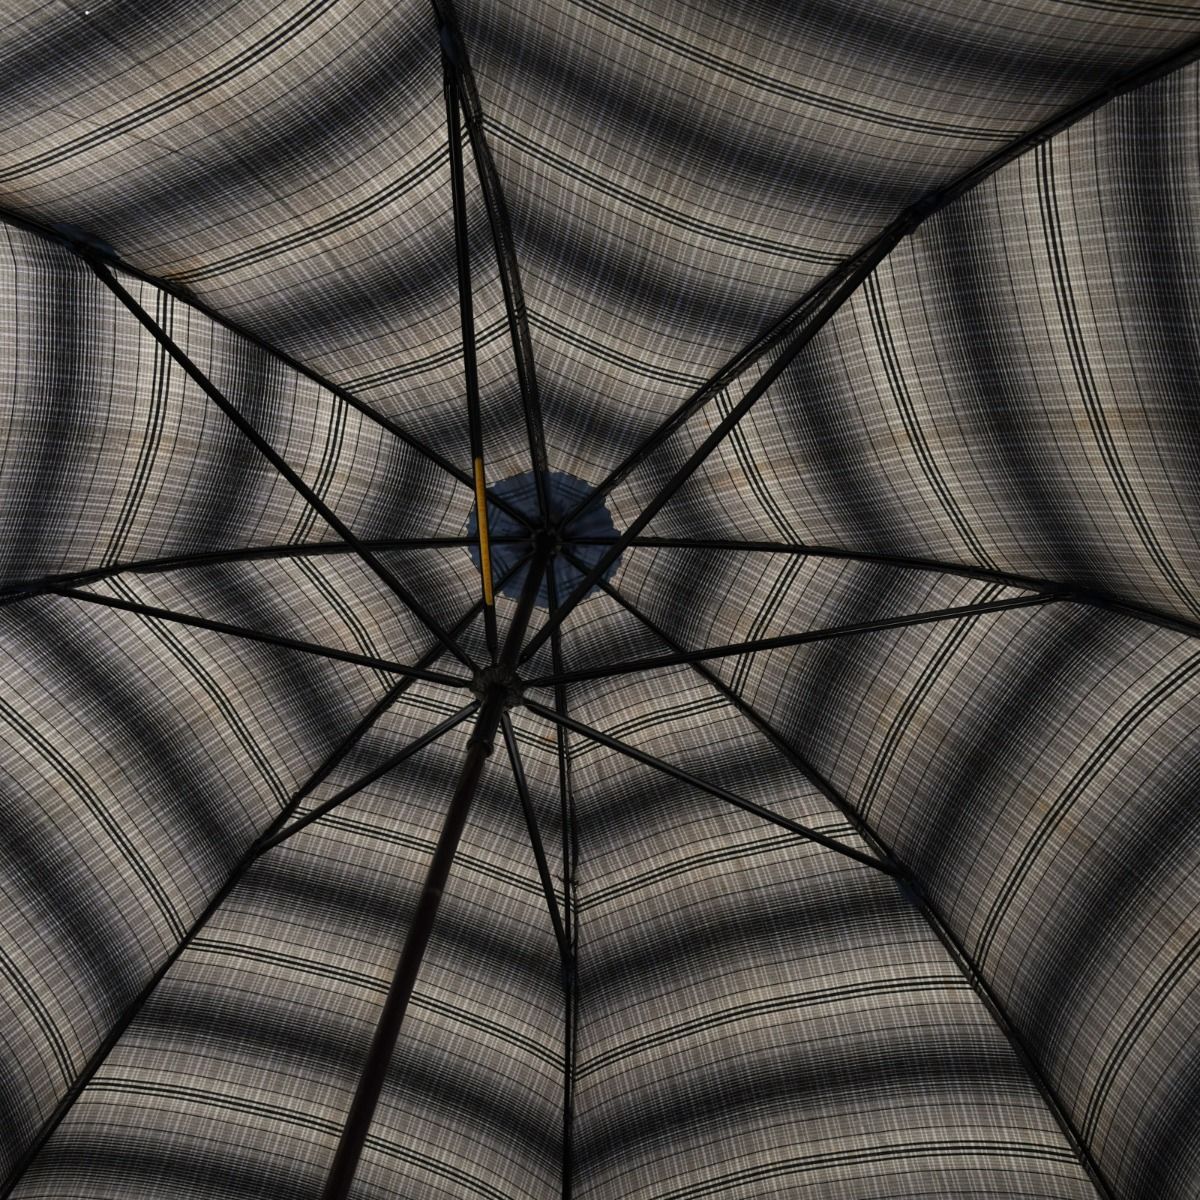 1960s Umbrella